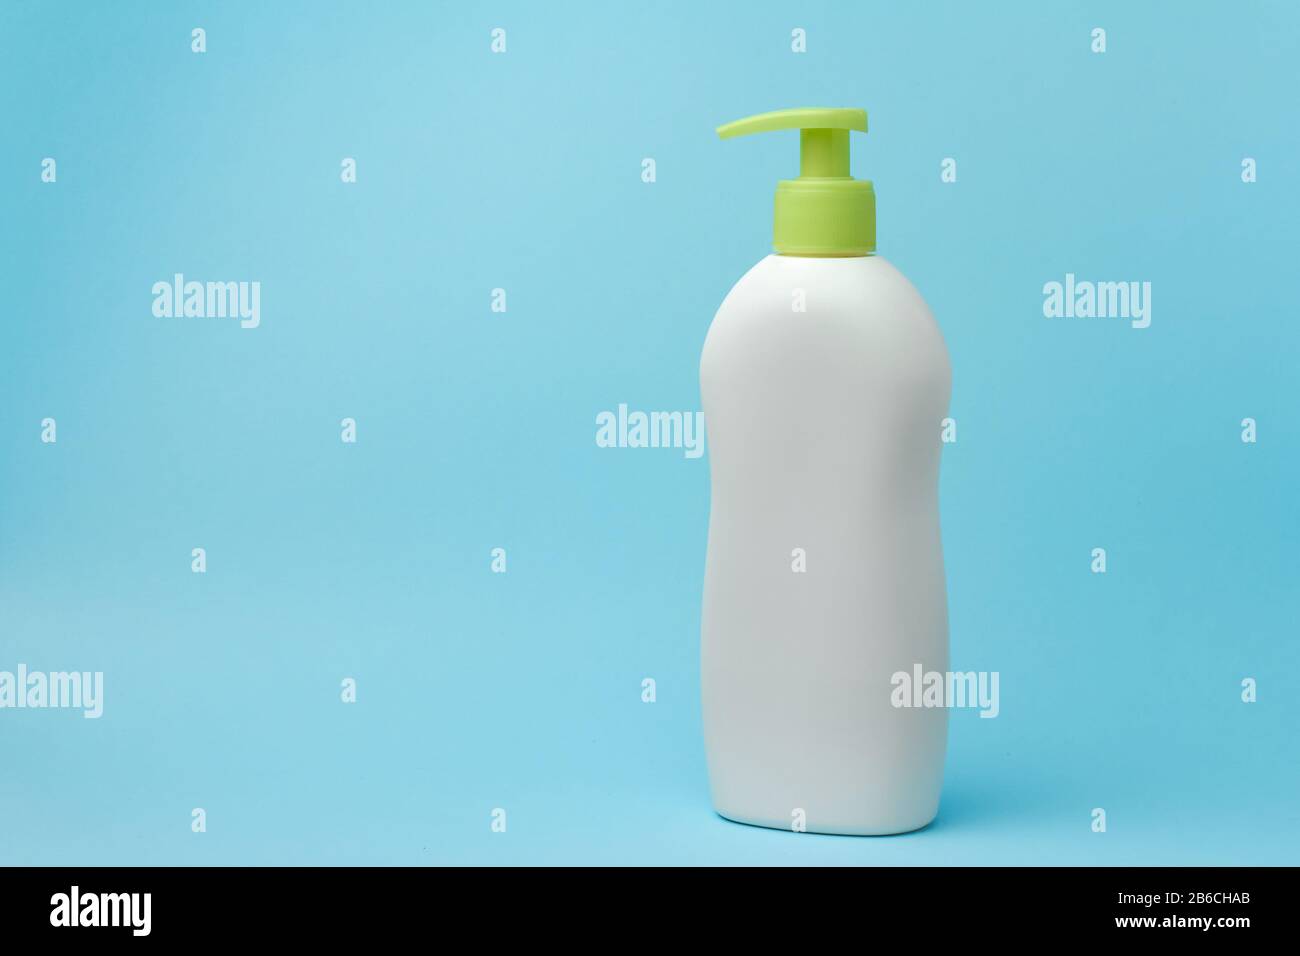 Verspotten Sie weiße Flaschen mit einem Spender auf blauem Hintergrund. Platz für Werbung für kosmetische Produkte kopieren. Stockfoto